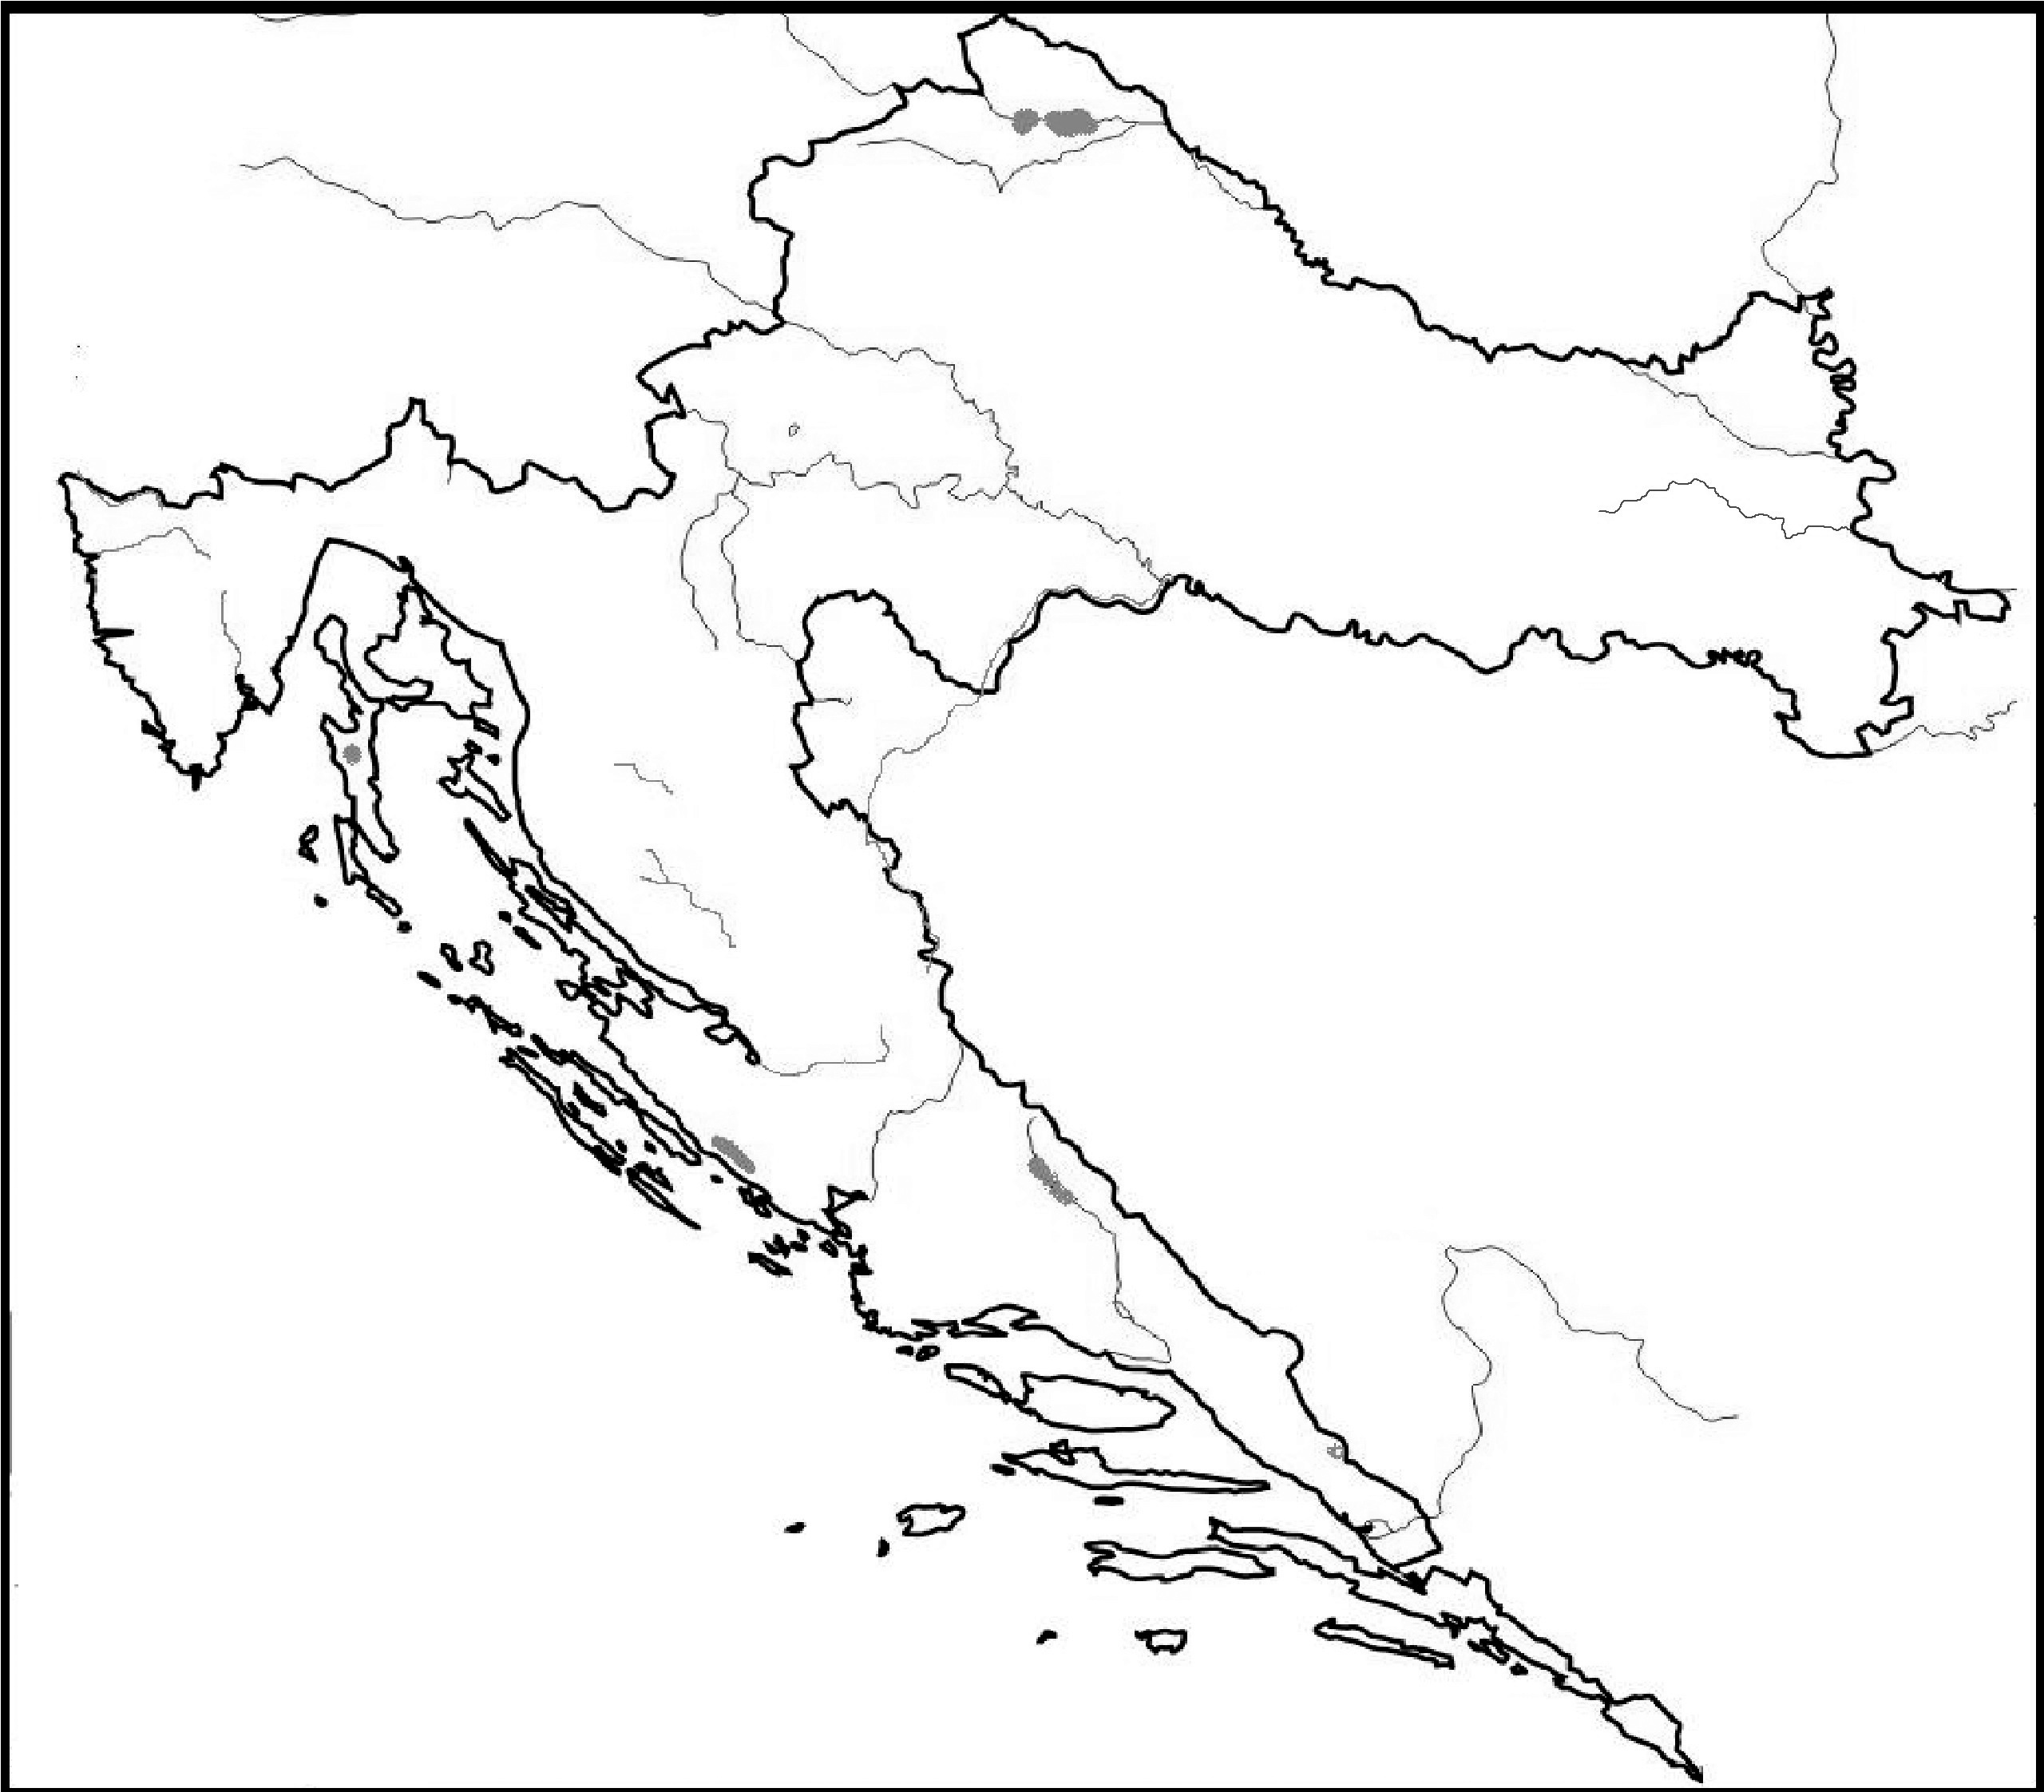 slijepa karta gorske hrvatske Osnovna škola Veruda Pula   Ivan Gambiroža slijepa karta gorske hrvatske